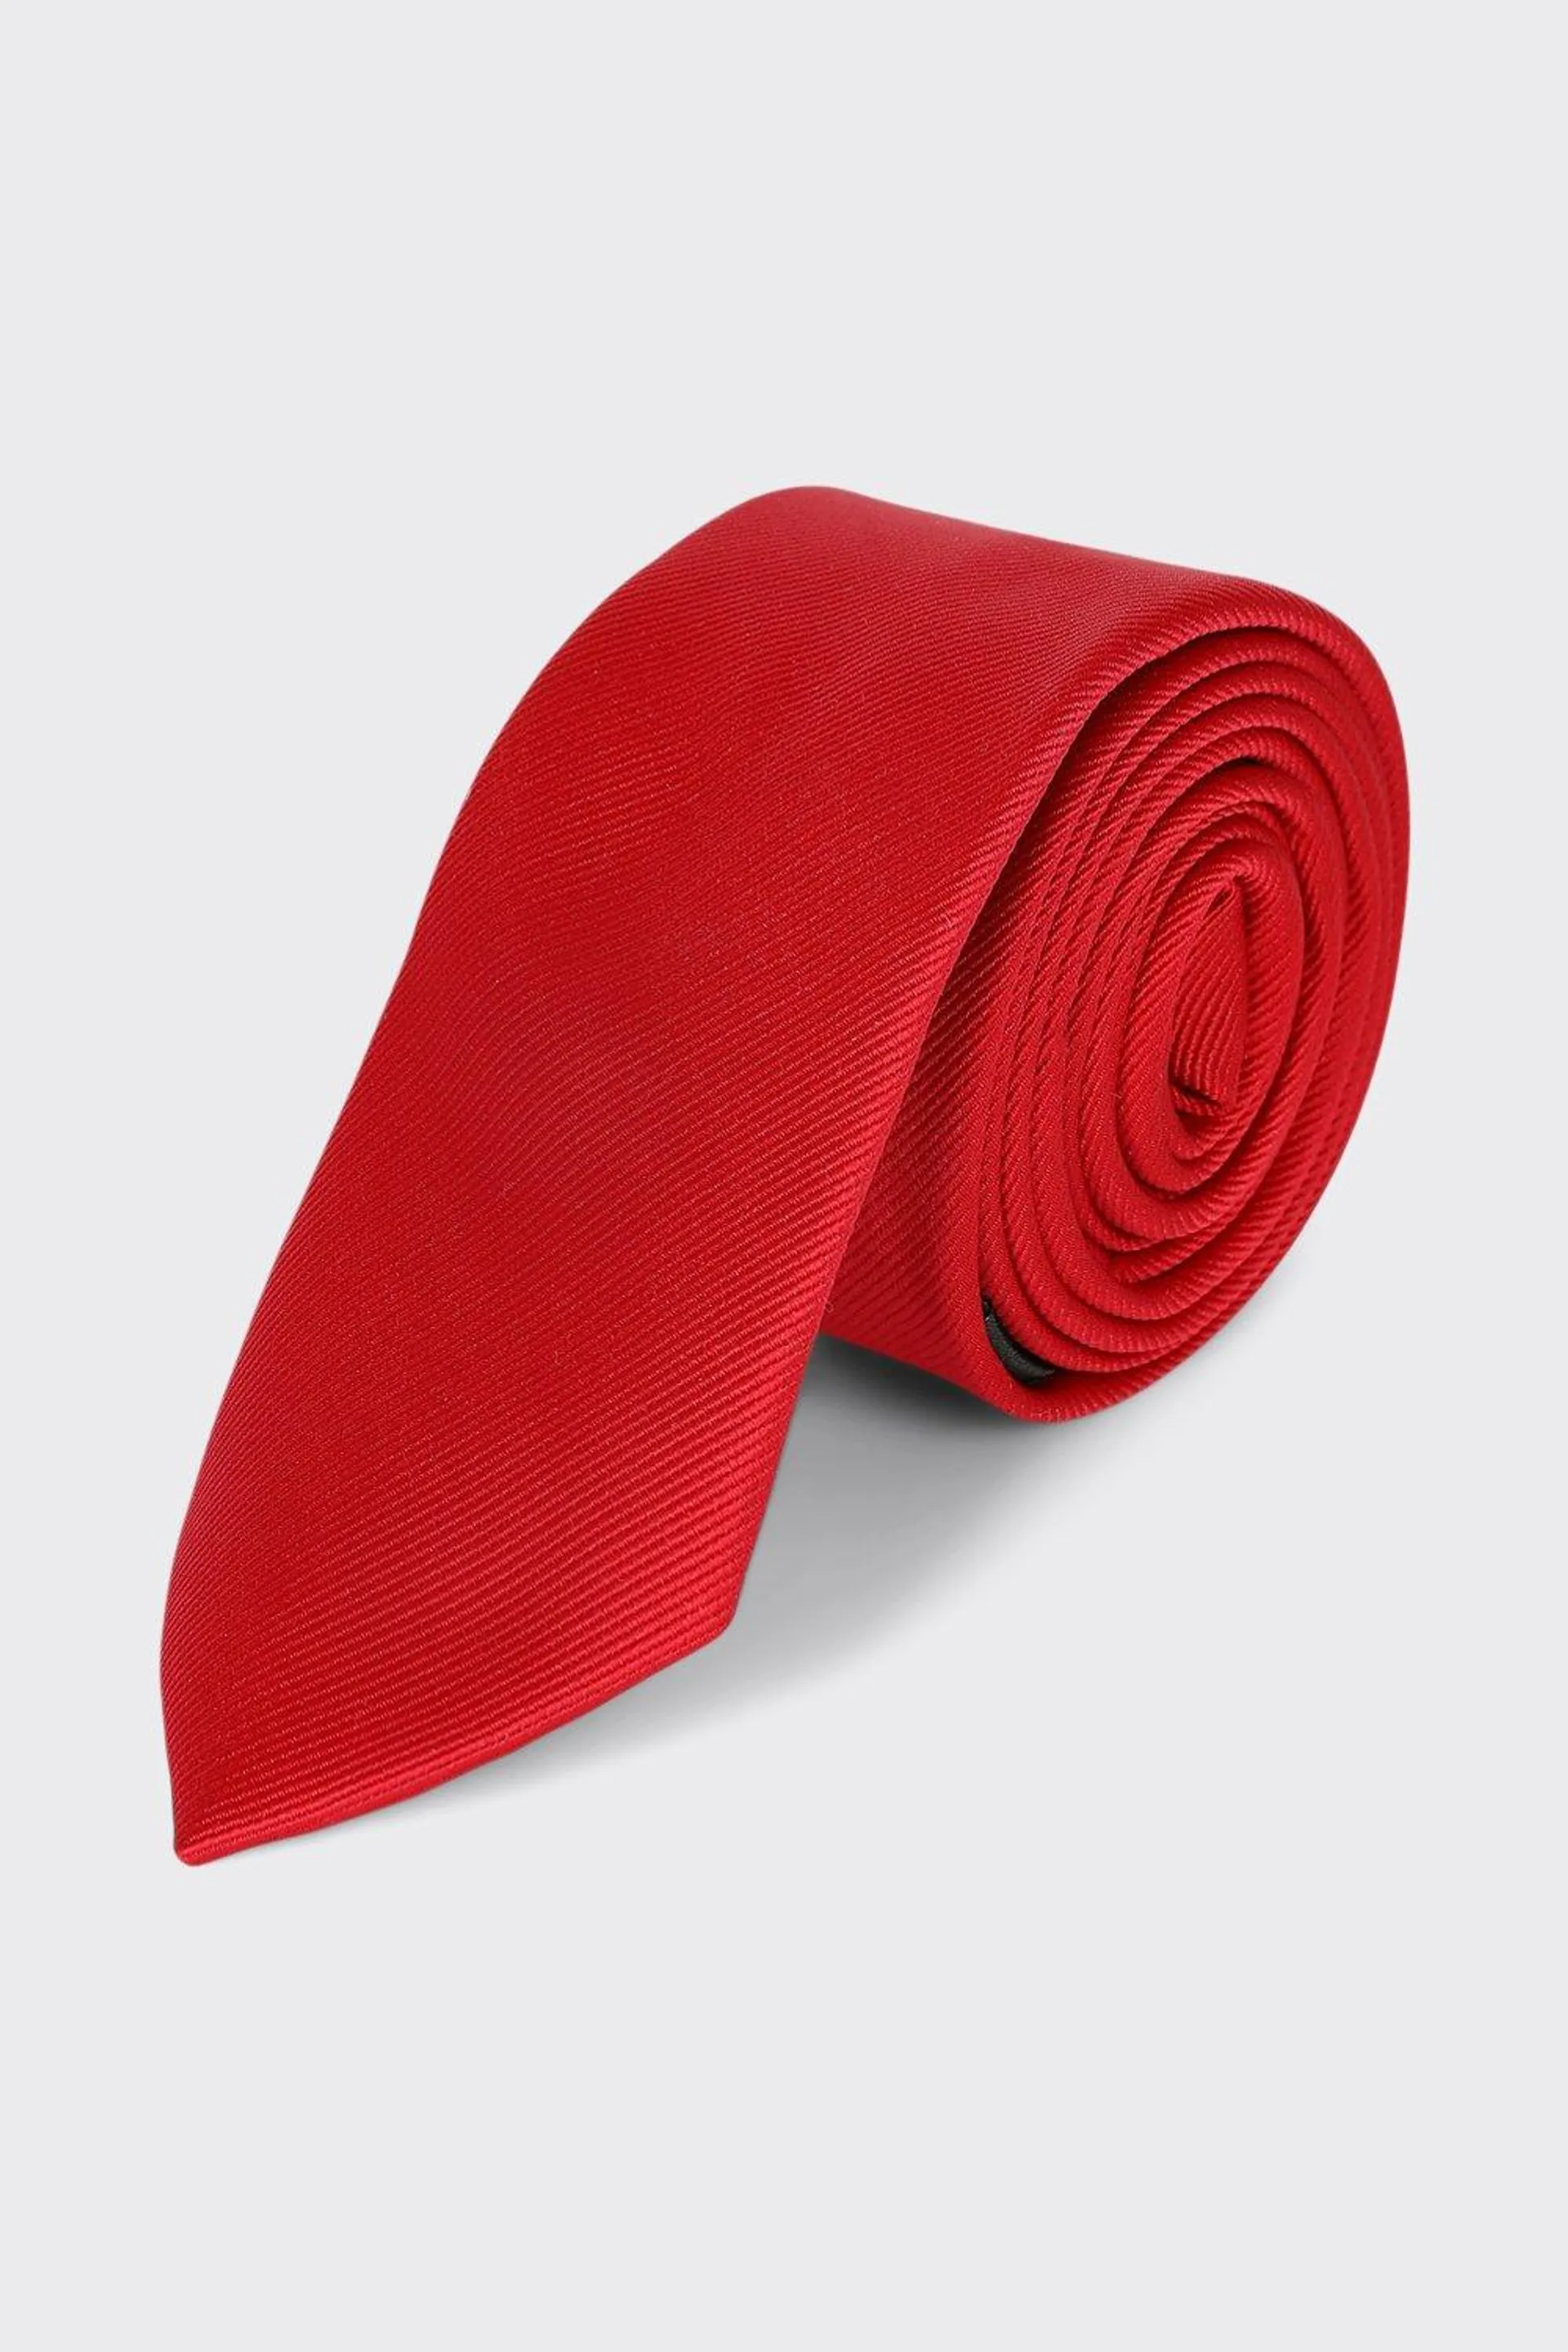 Slim Red Tie